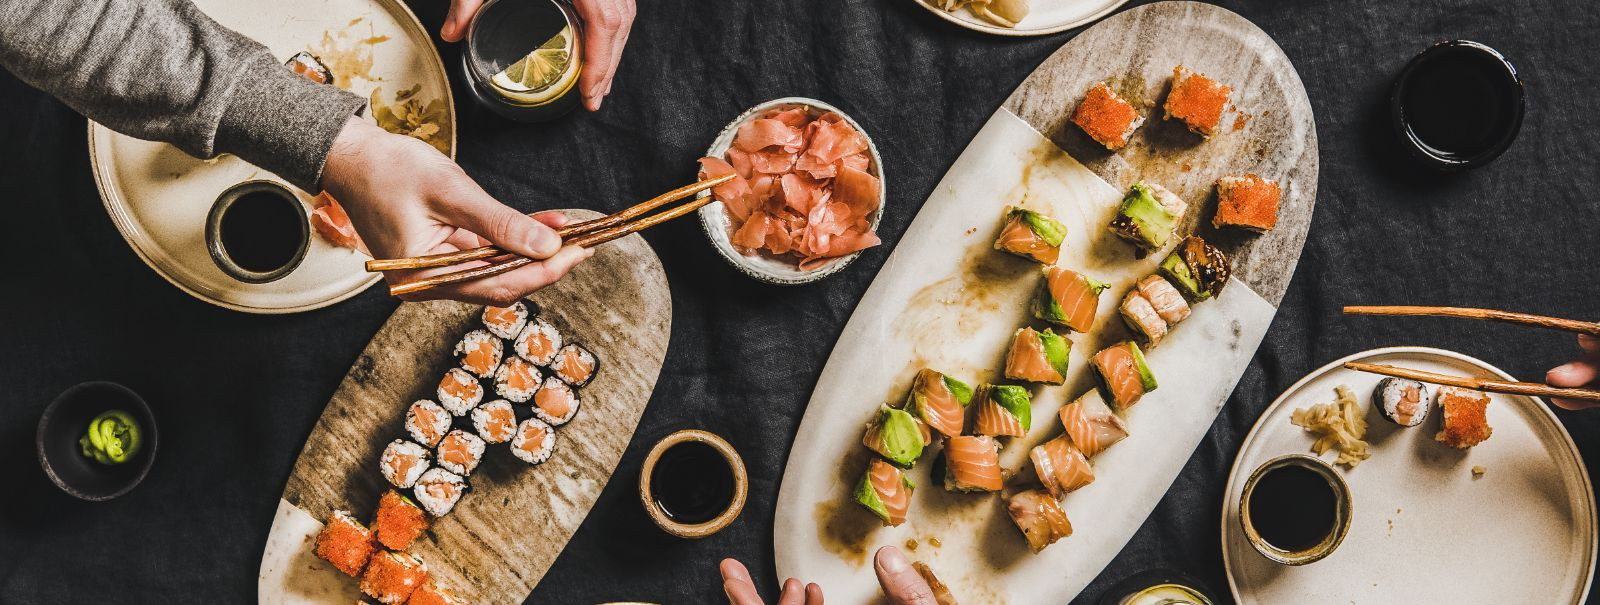 Sushi, mis on toiduarmastajate maitsemeeli vallutanud kogu maailmas, ei ole lihtsalt eine; see on elamus. Sushi-teemalise ürituse korraldamine on suurepärane vi